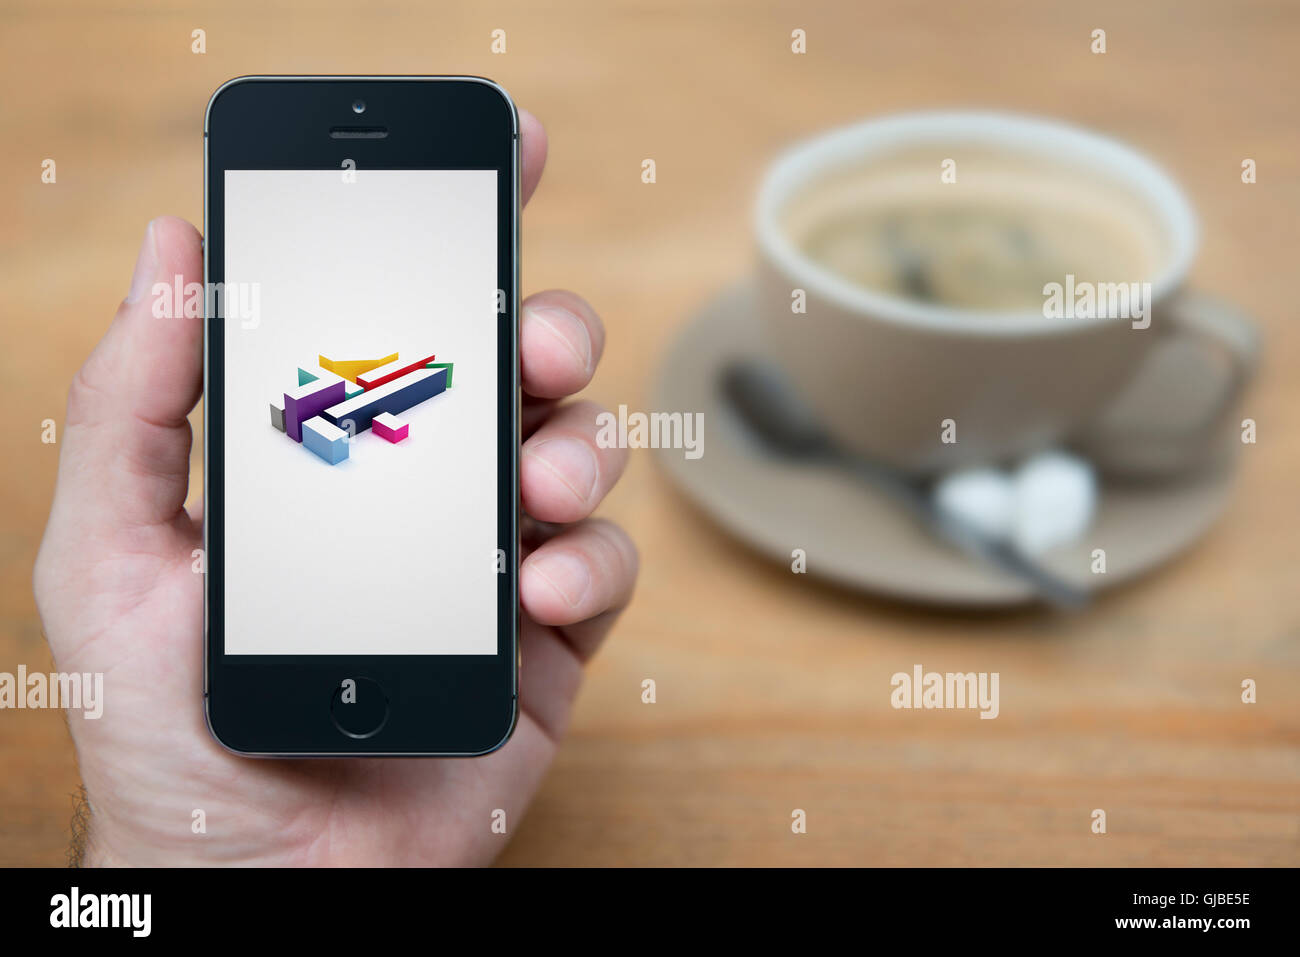 Un homme se penche sur son iPhone qui affiche le logo de Channel 4, tandis qu'assis avec une tasse de café (usage éditorial uniquement). Banque D'Images